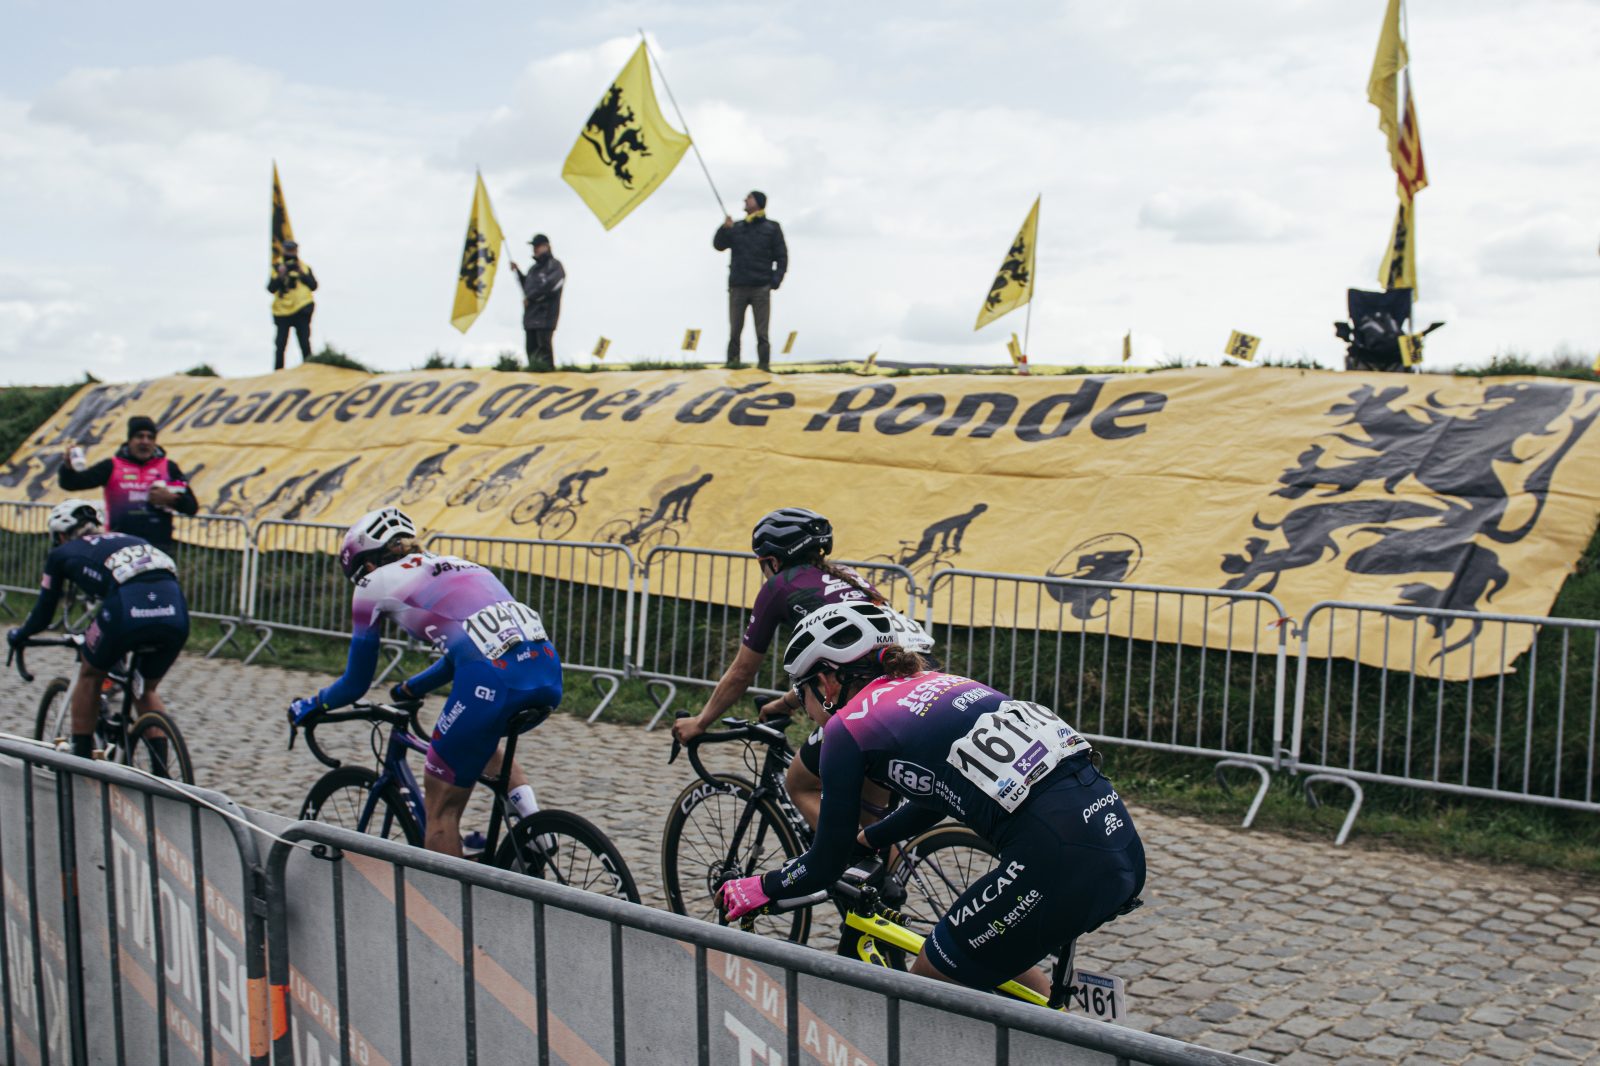 Ronde van Vlaanderen. The analysis by sports director Davide Arzeni